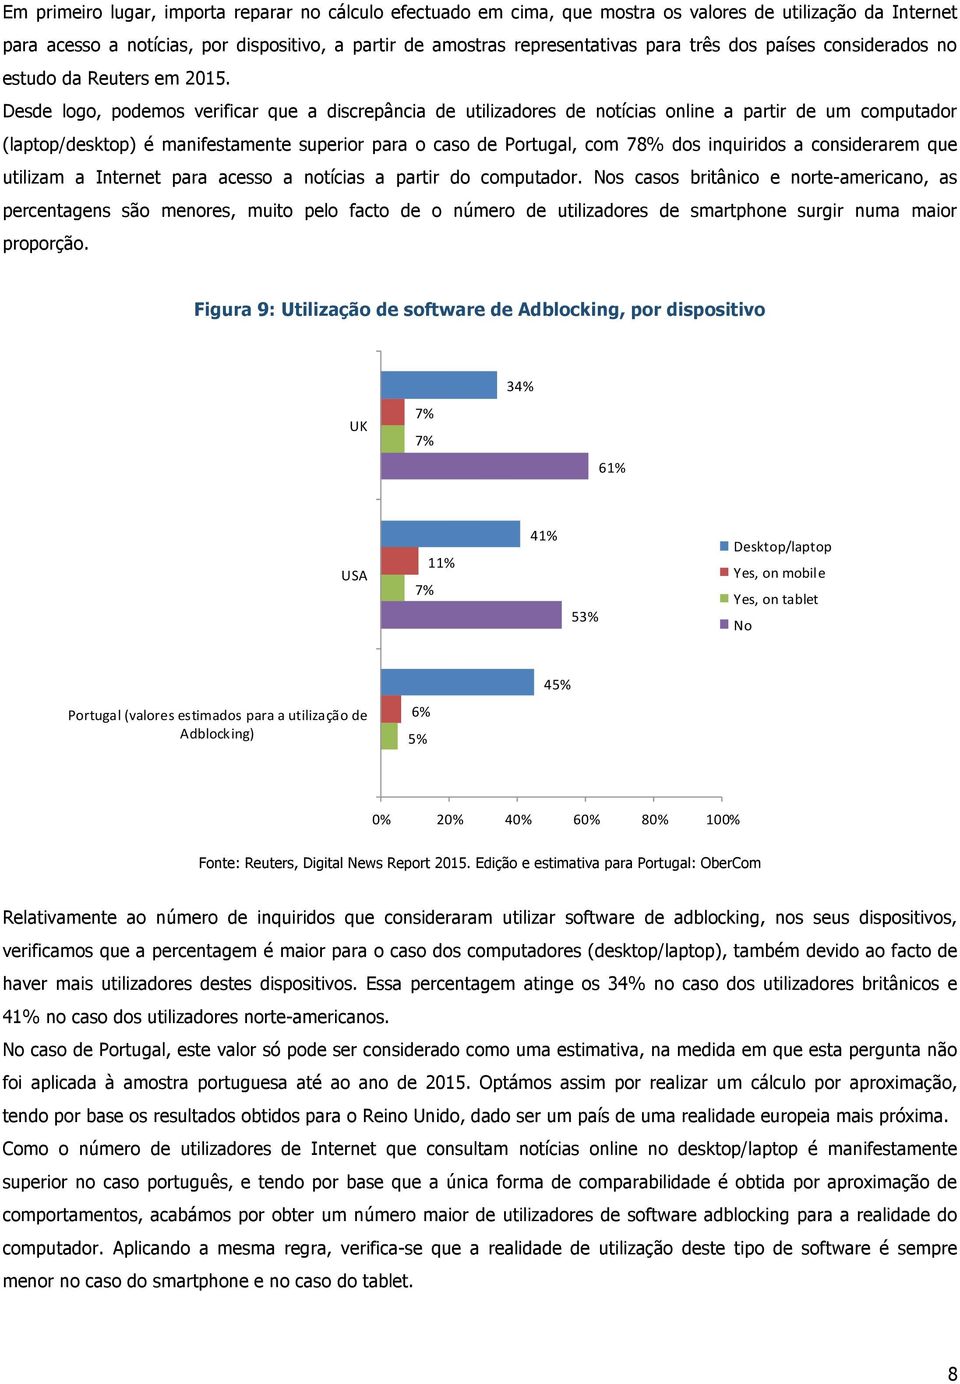 Desde logo, podemos verificar que a discrepância de utilizadores de notícias online a partir de um computador (laptop/desktop) é manifestamente superior para o caso de Portugal, com 78% dos